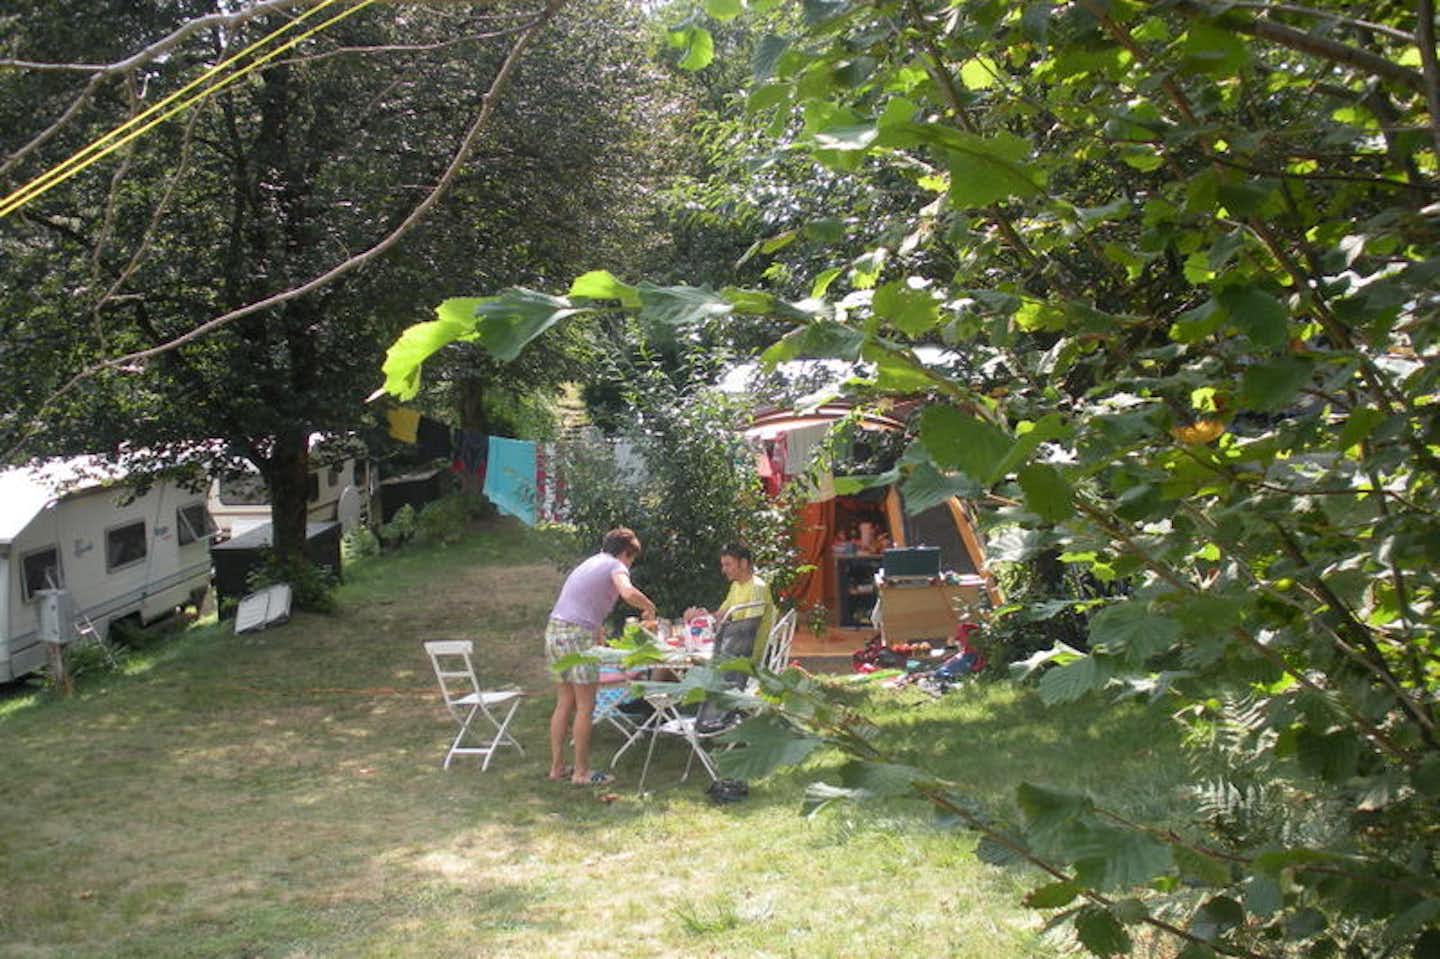 Campeggio al Parco d'Oro - Camper beim Essen vor ihrem Wohnwagen auf dem Campingplatz